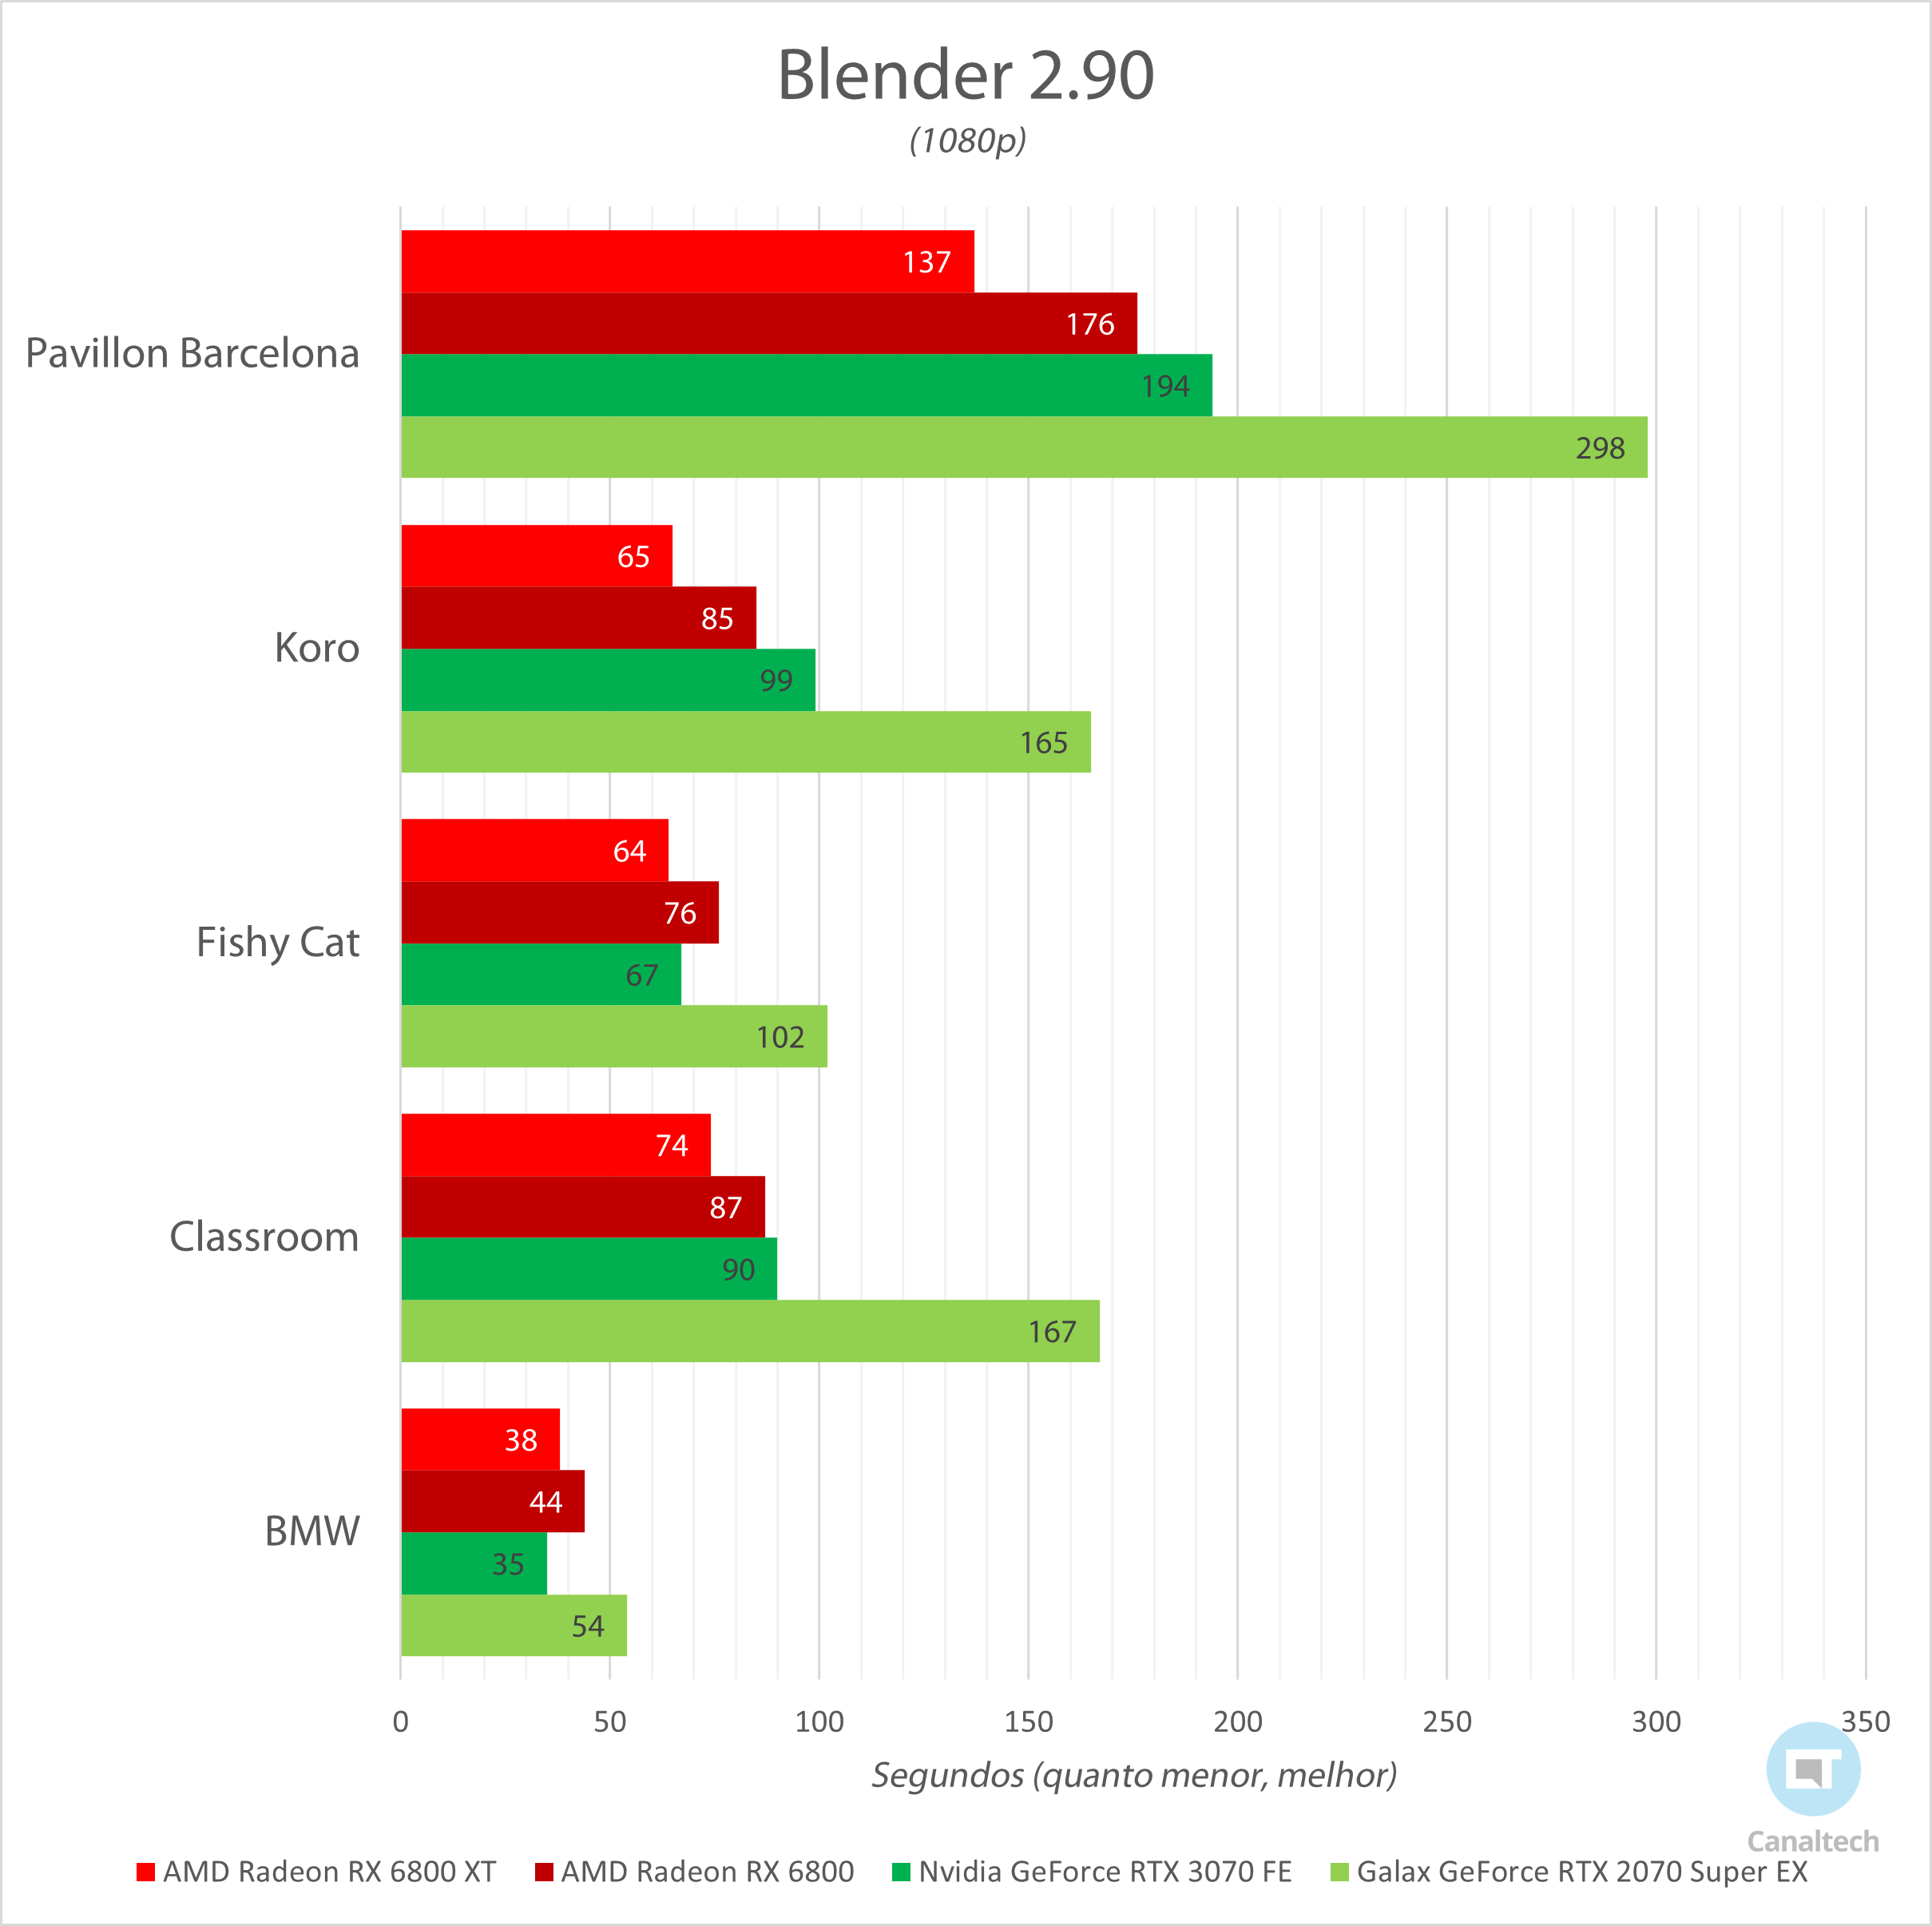 Blender mede a capacidade a capacidade da GPU de renderizar cenas tridimensionais predeterminadas; quanto menor o tempo de renderização, melhor